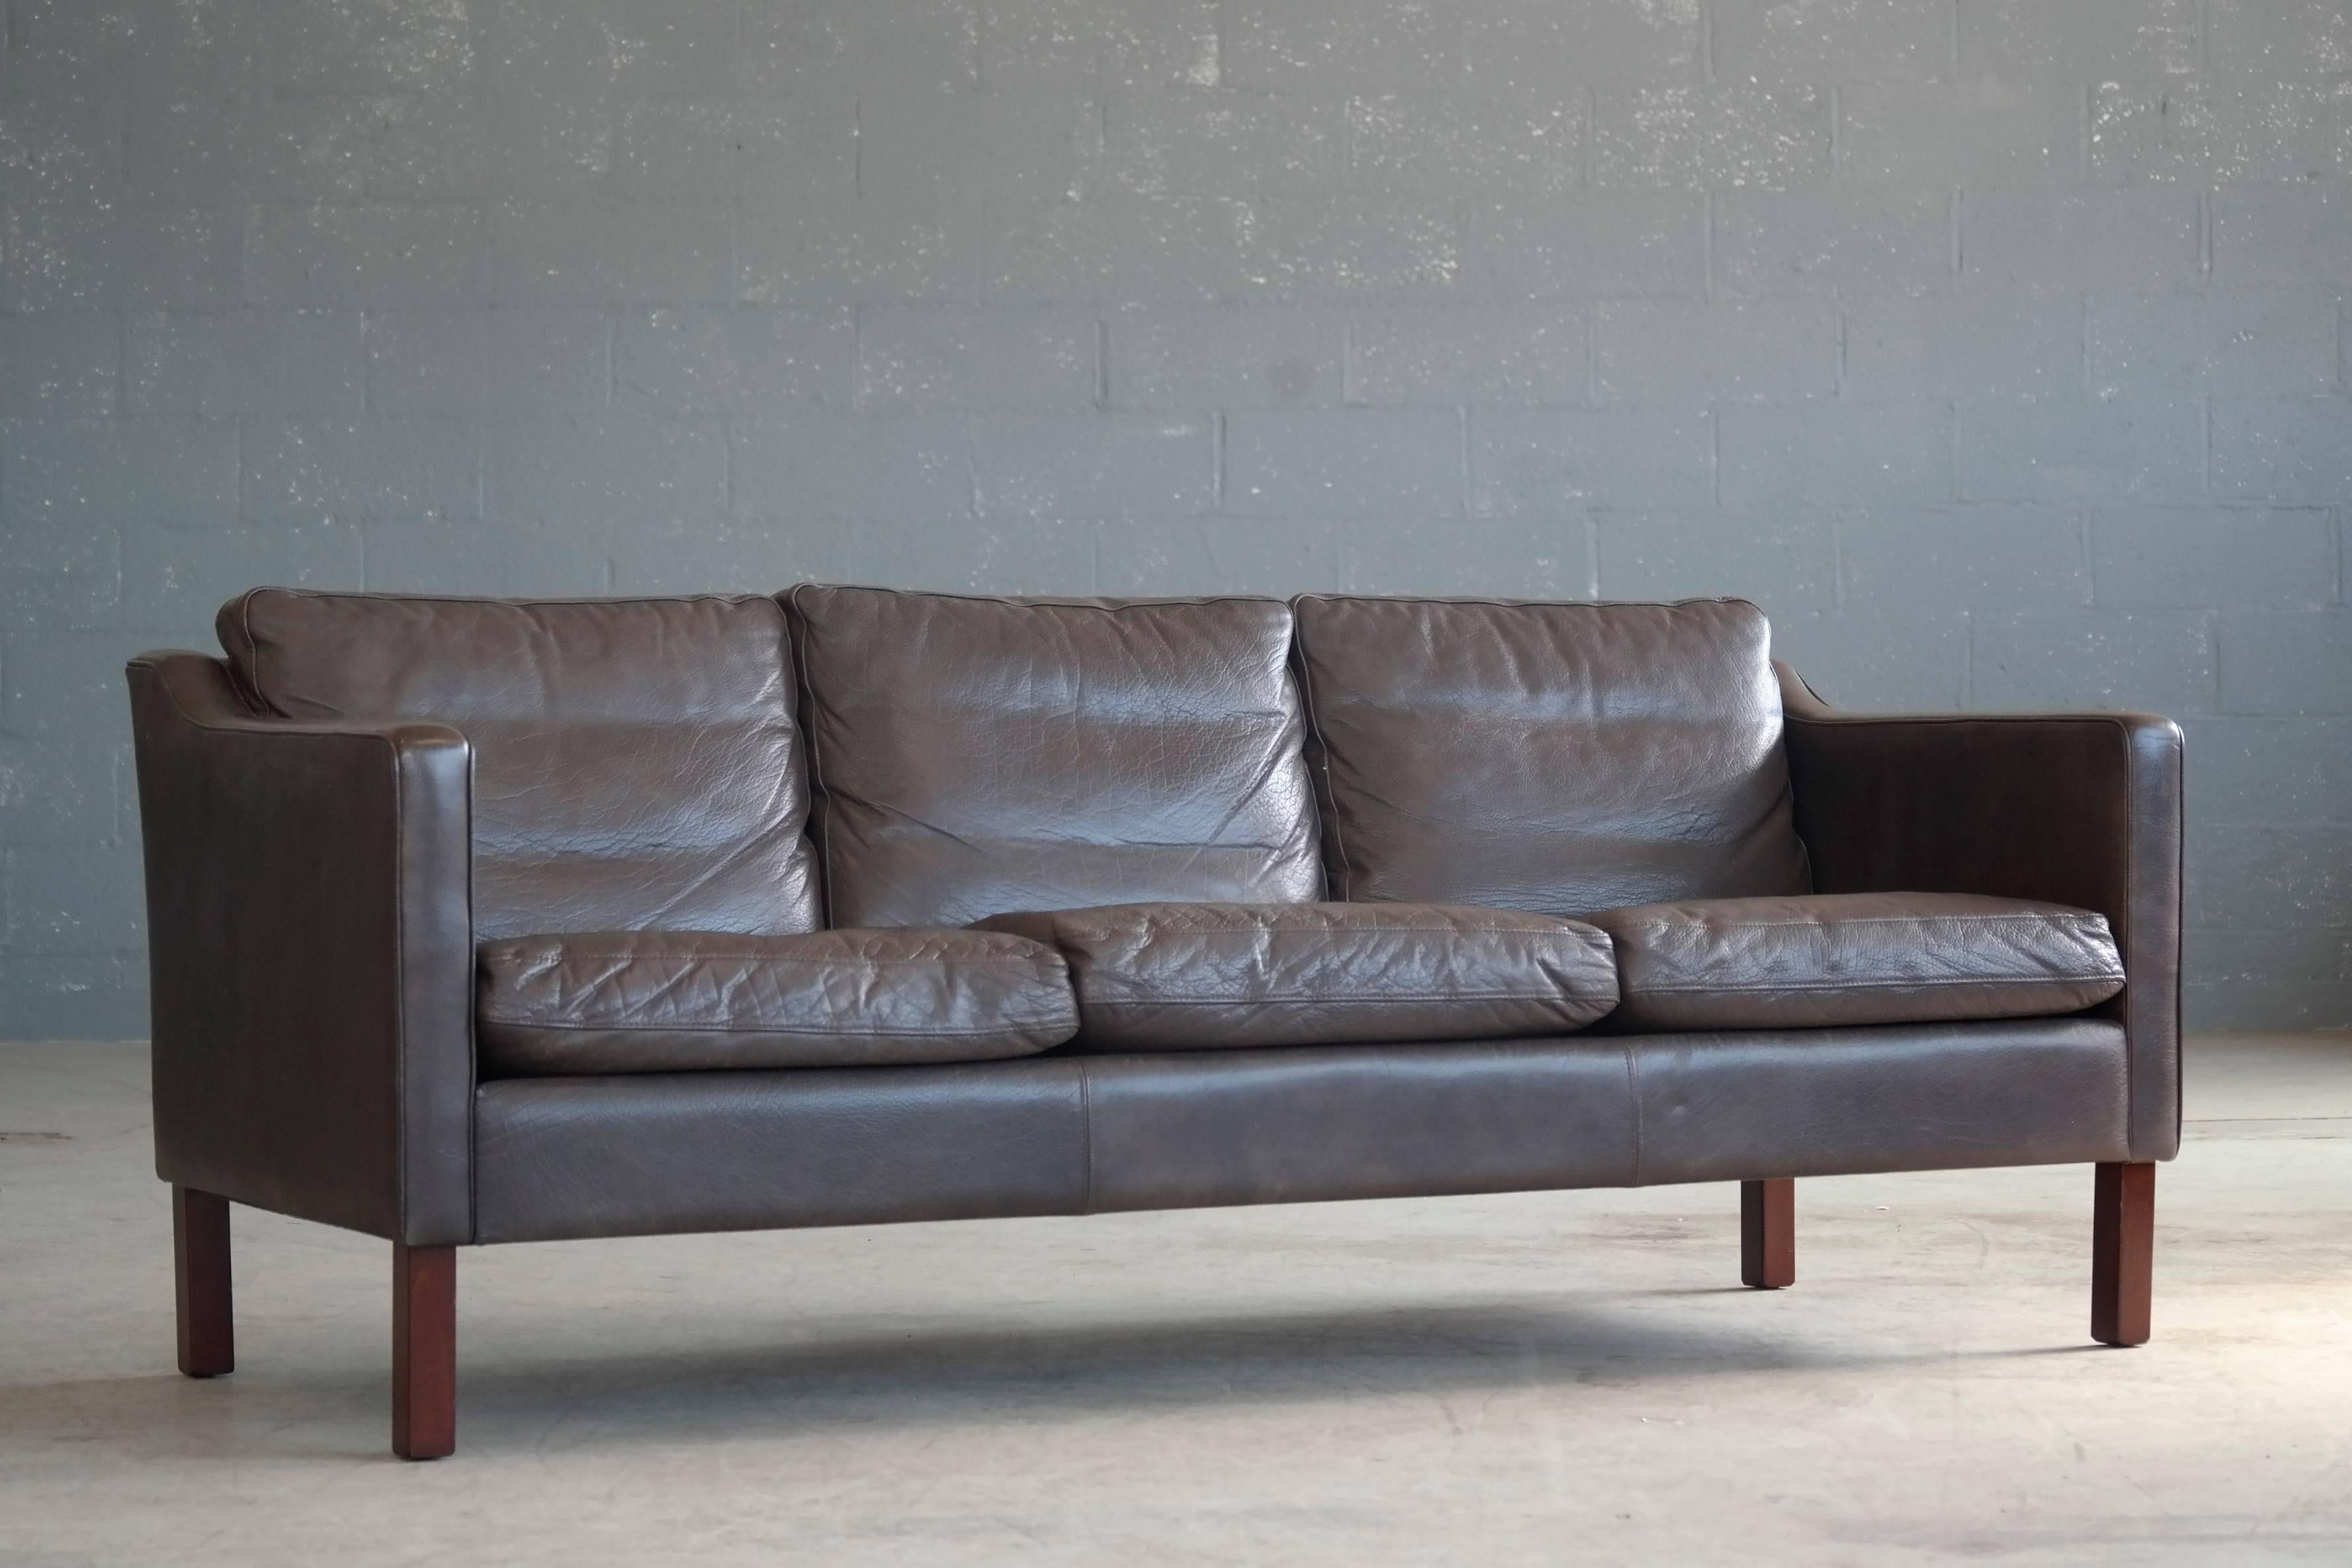 Scandinavian Modern Børge Mogensen Style Sofa in Dark Espresso Down Filled Leather by Mogens Hansen